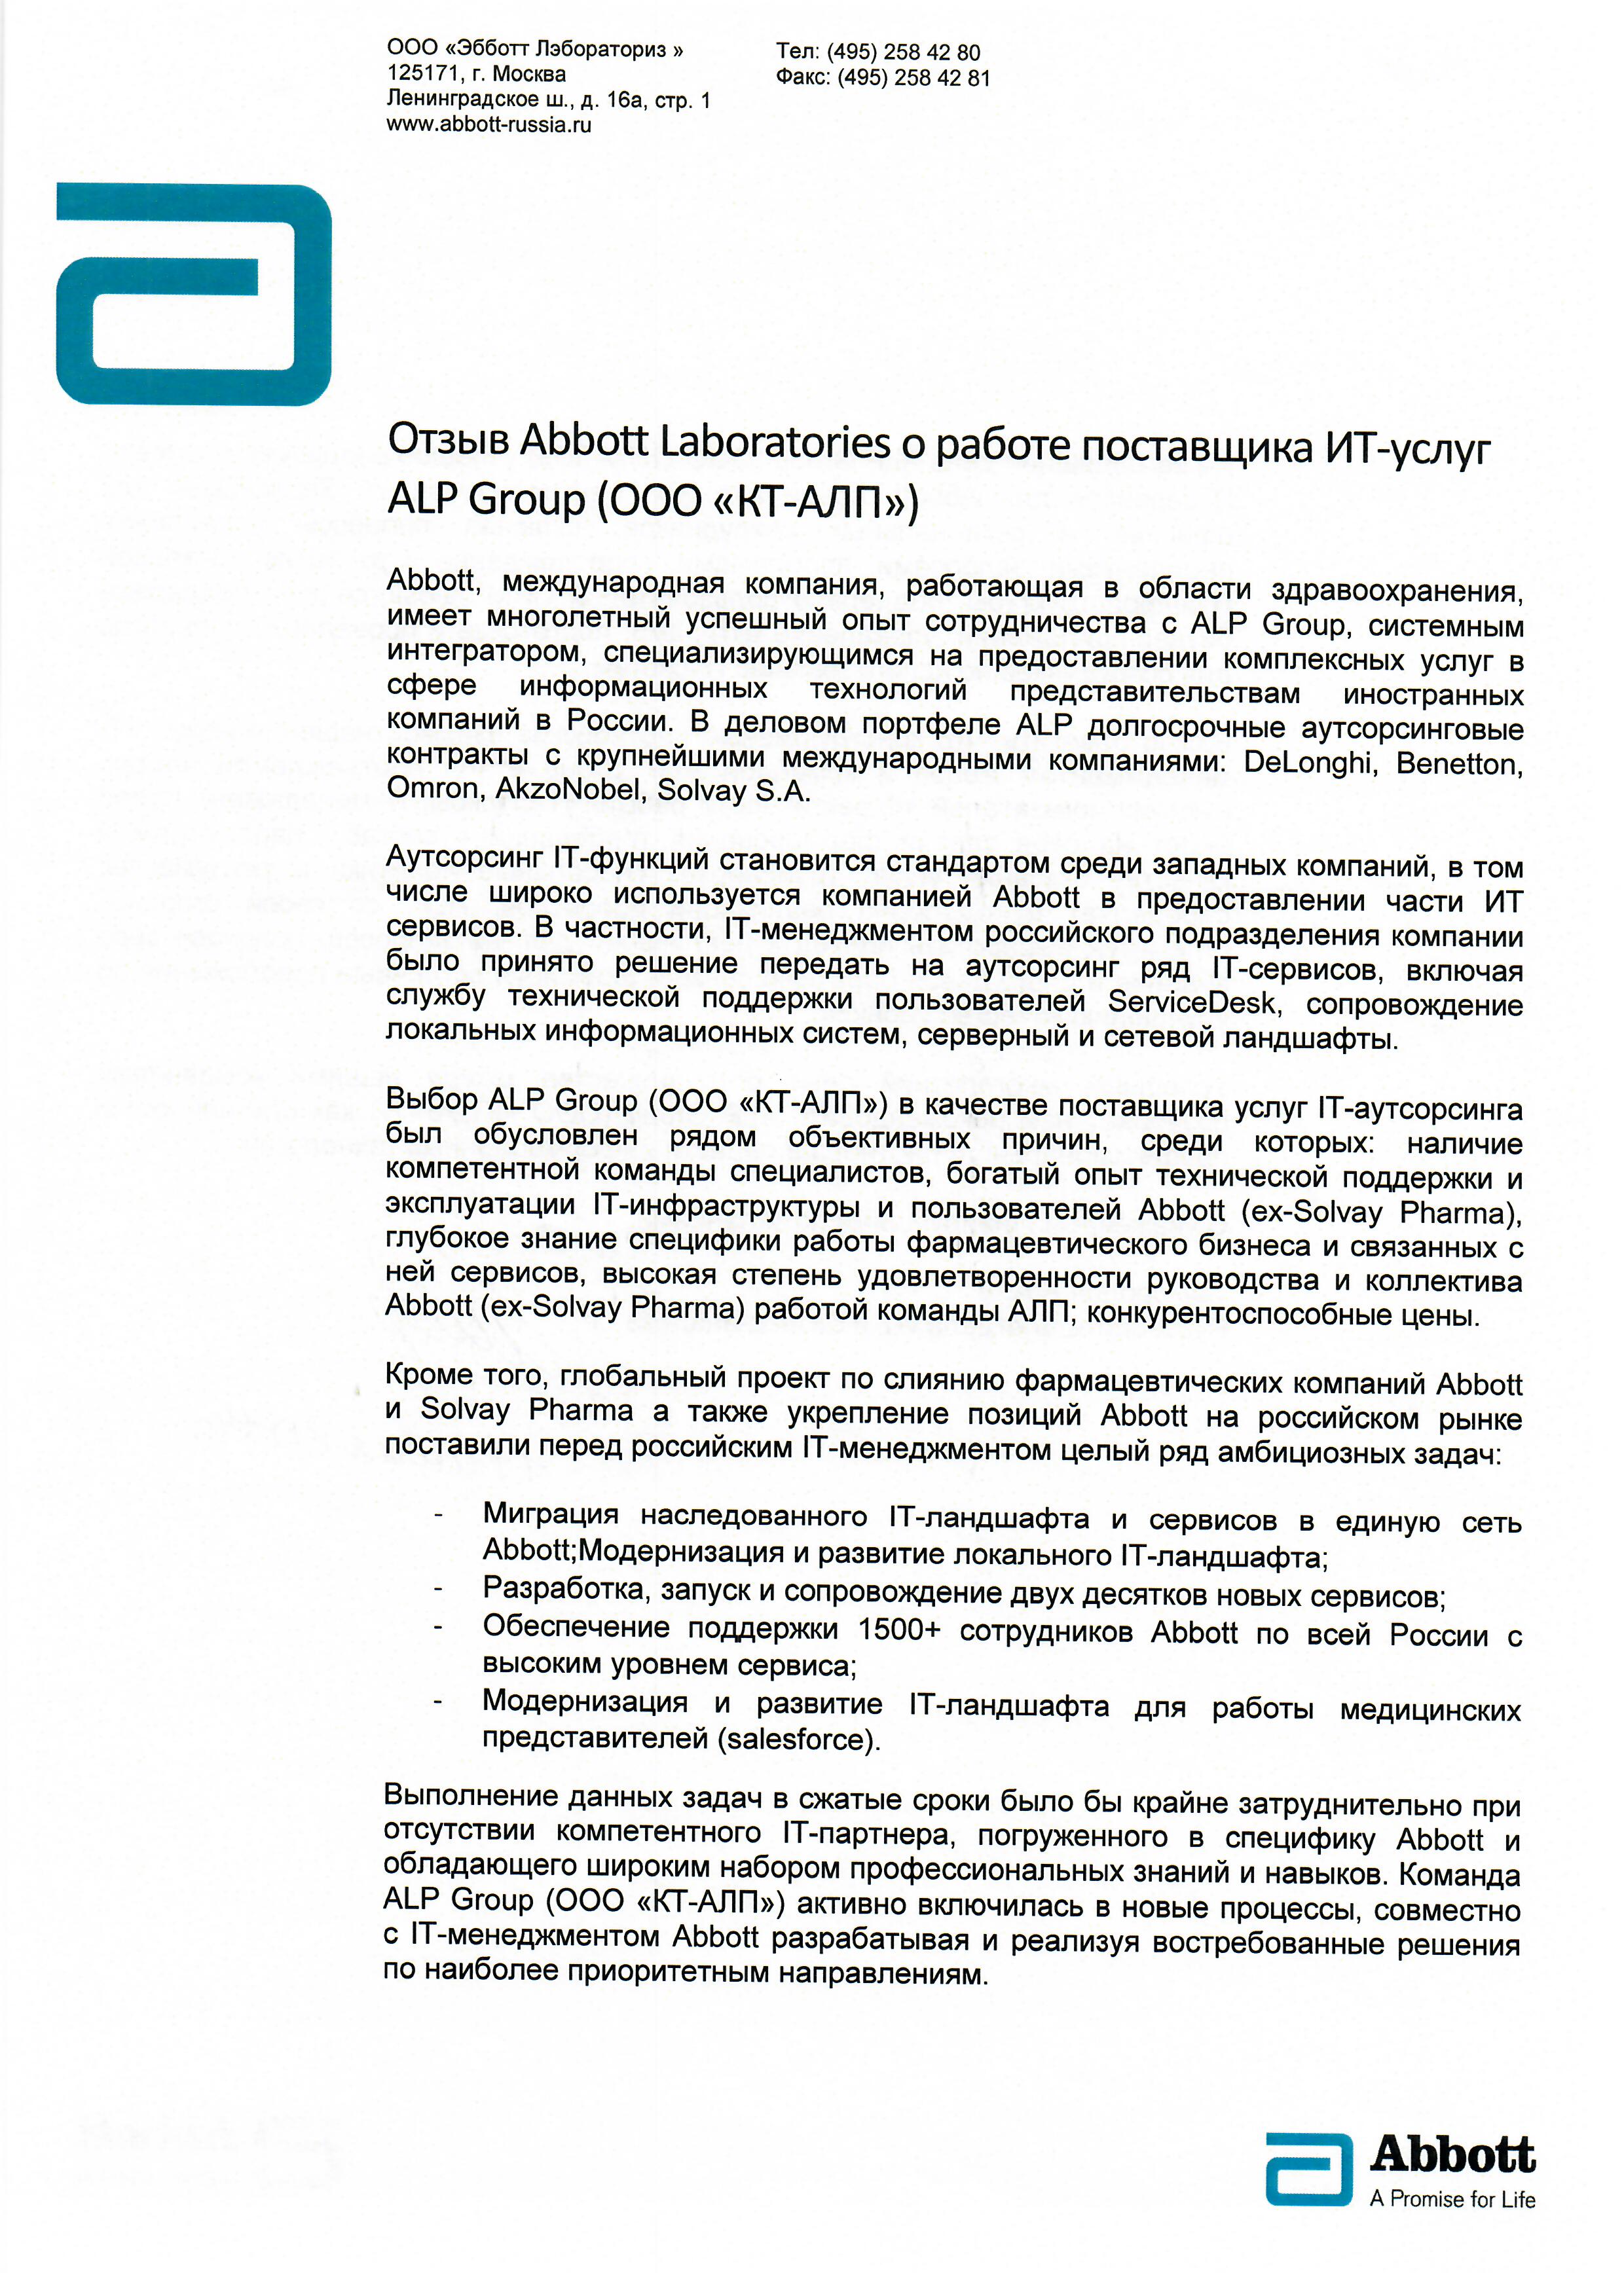 Комплексный ИТ аутсорсинг для компании Abbott Laboratories. страница 1